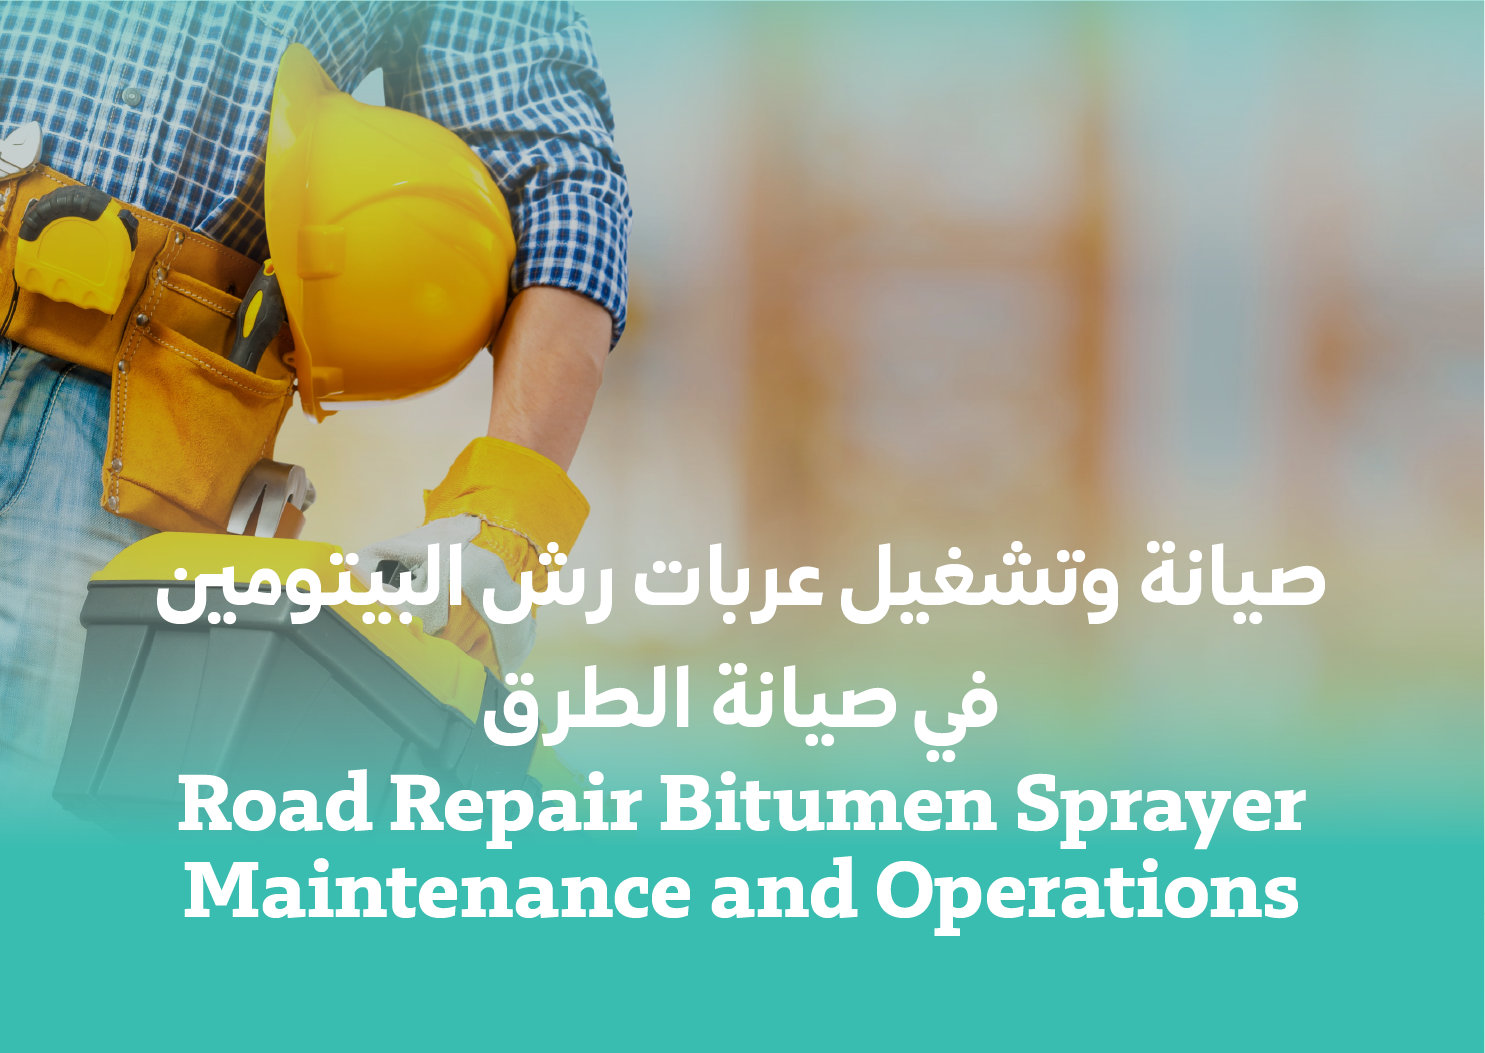 Road Repair Bitumen Sprayer Maintenance and Operations